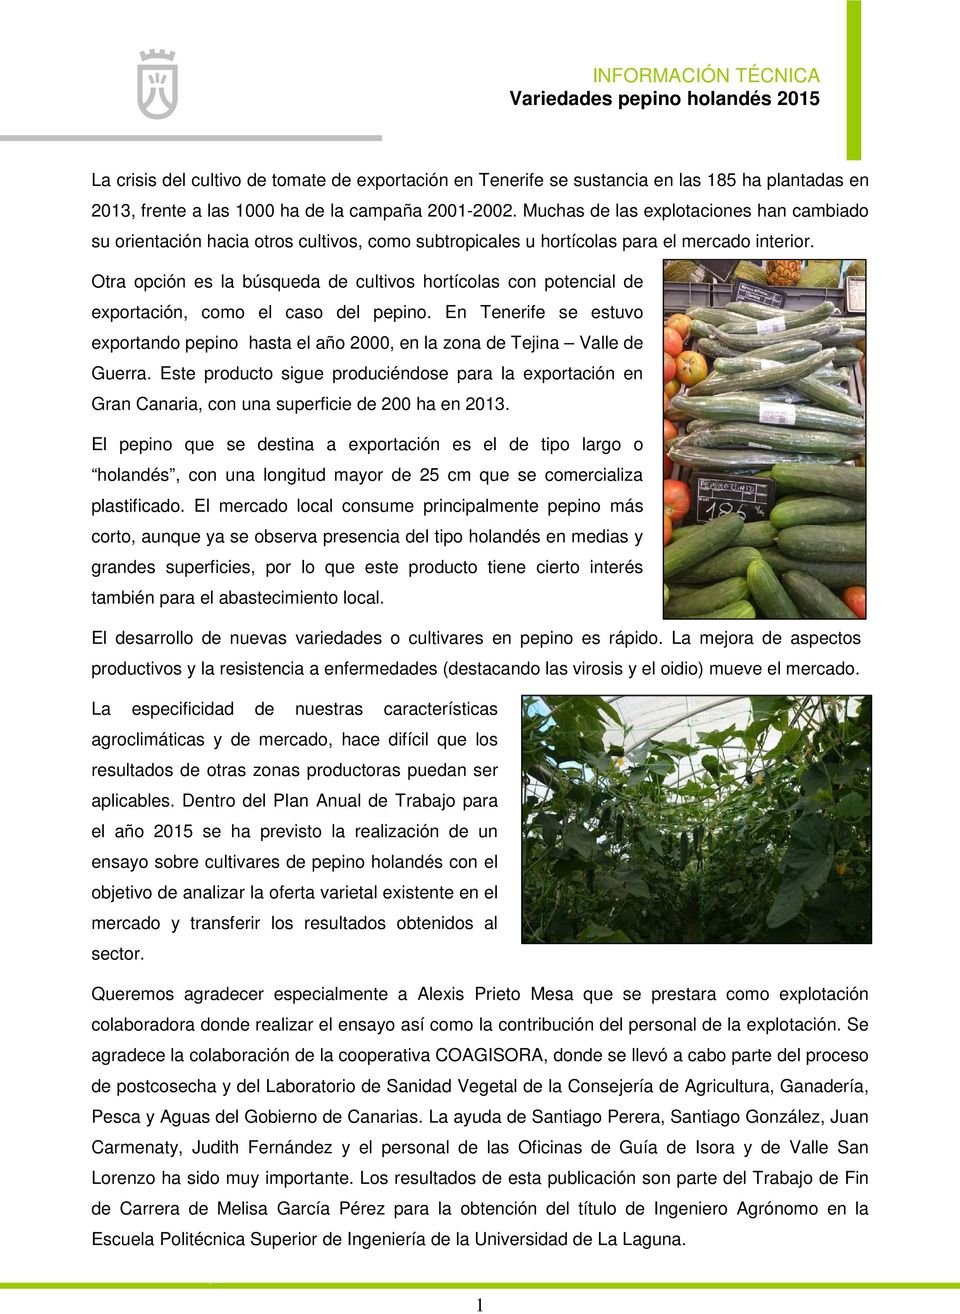 Otra opción es la búsqueda de cultivos hortícolas con potencial de exportación, como el caso del pepino.